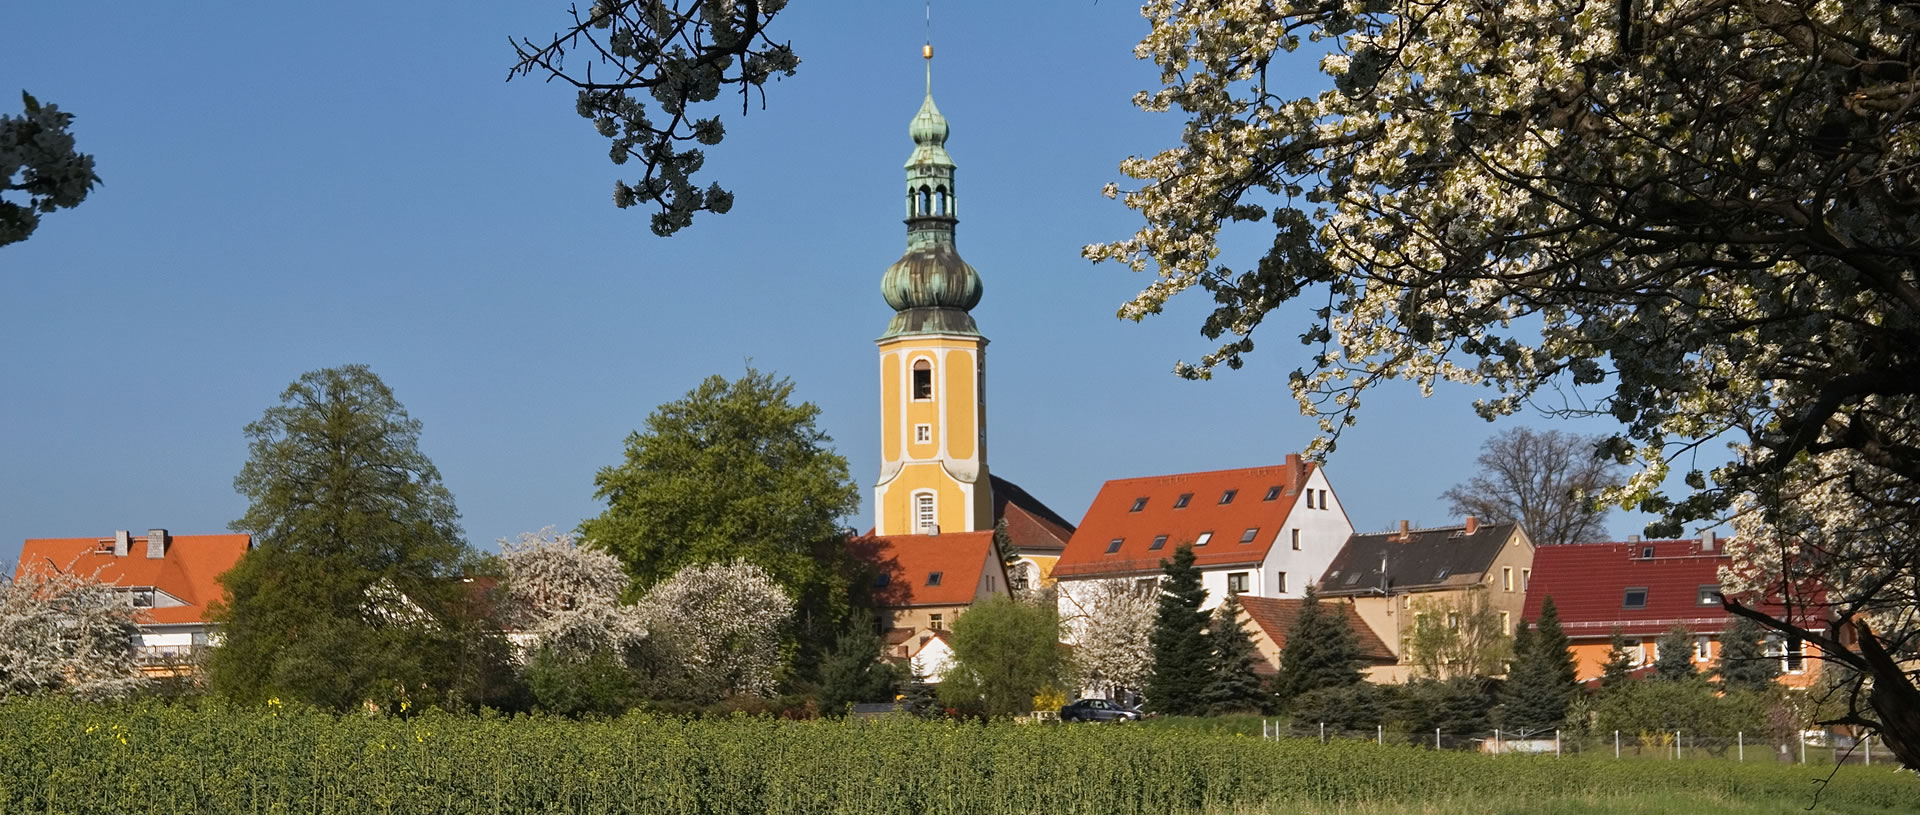 Gemeinde Hochkirch im Landkreis Bautzen in der Oberlausitz 